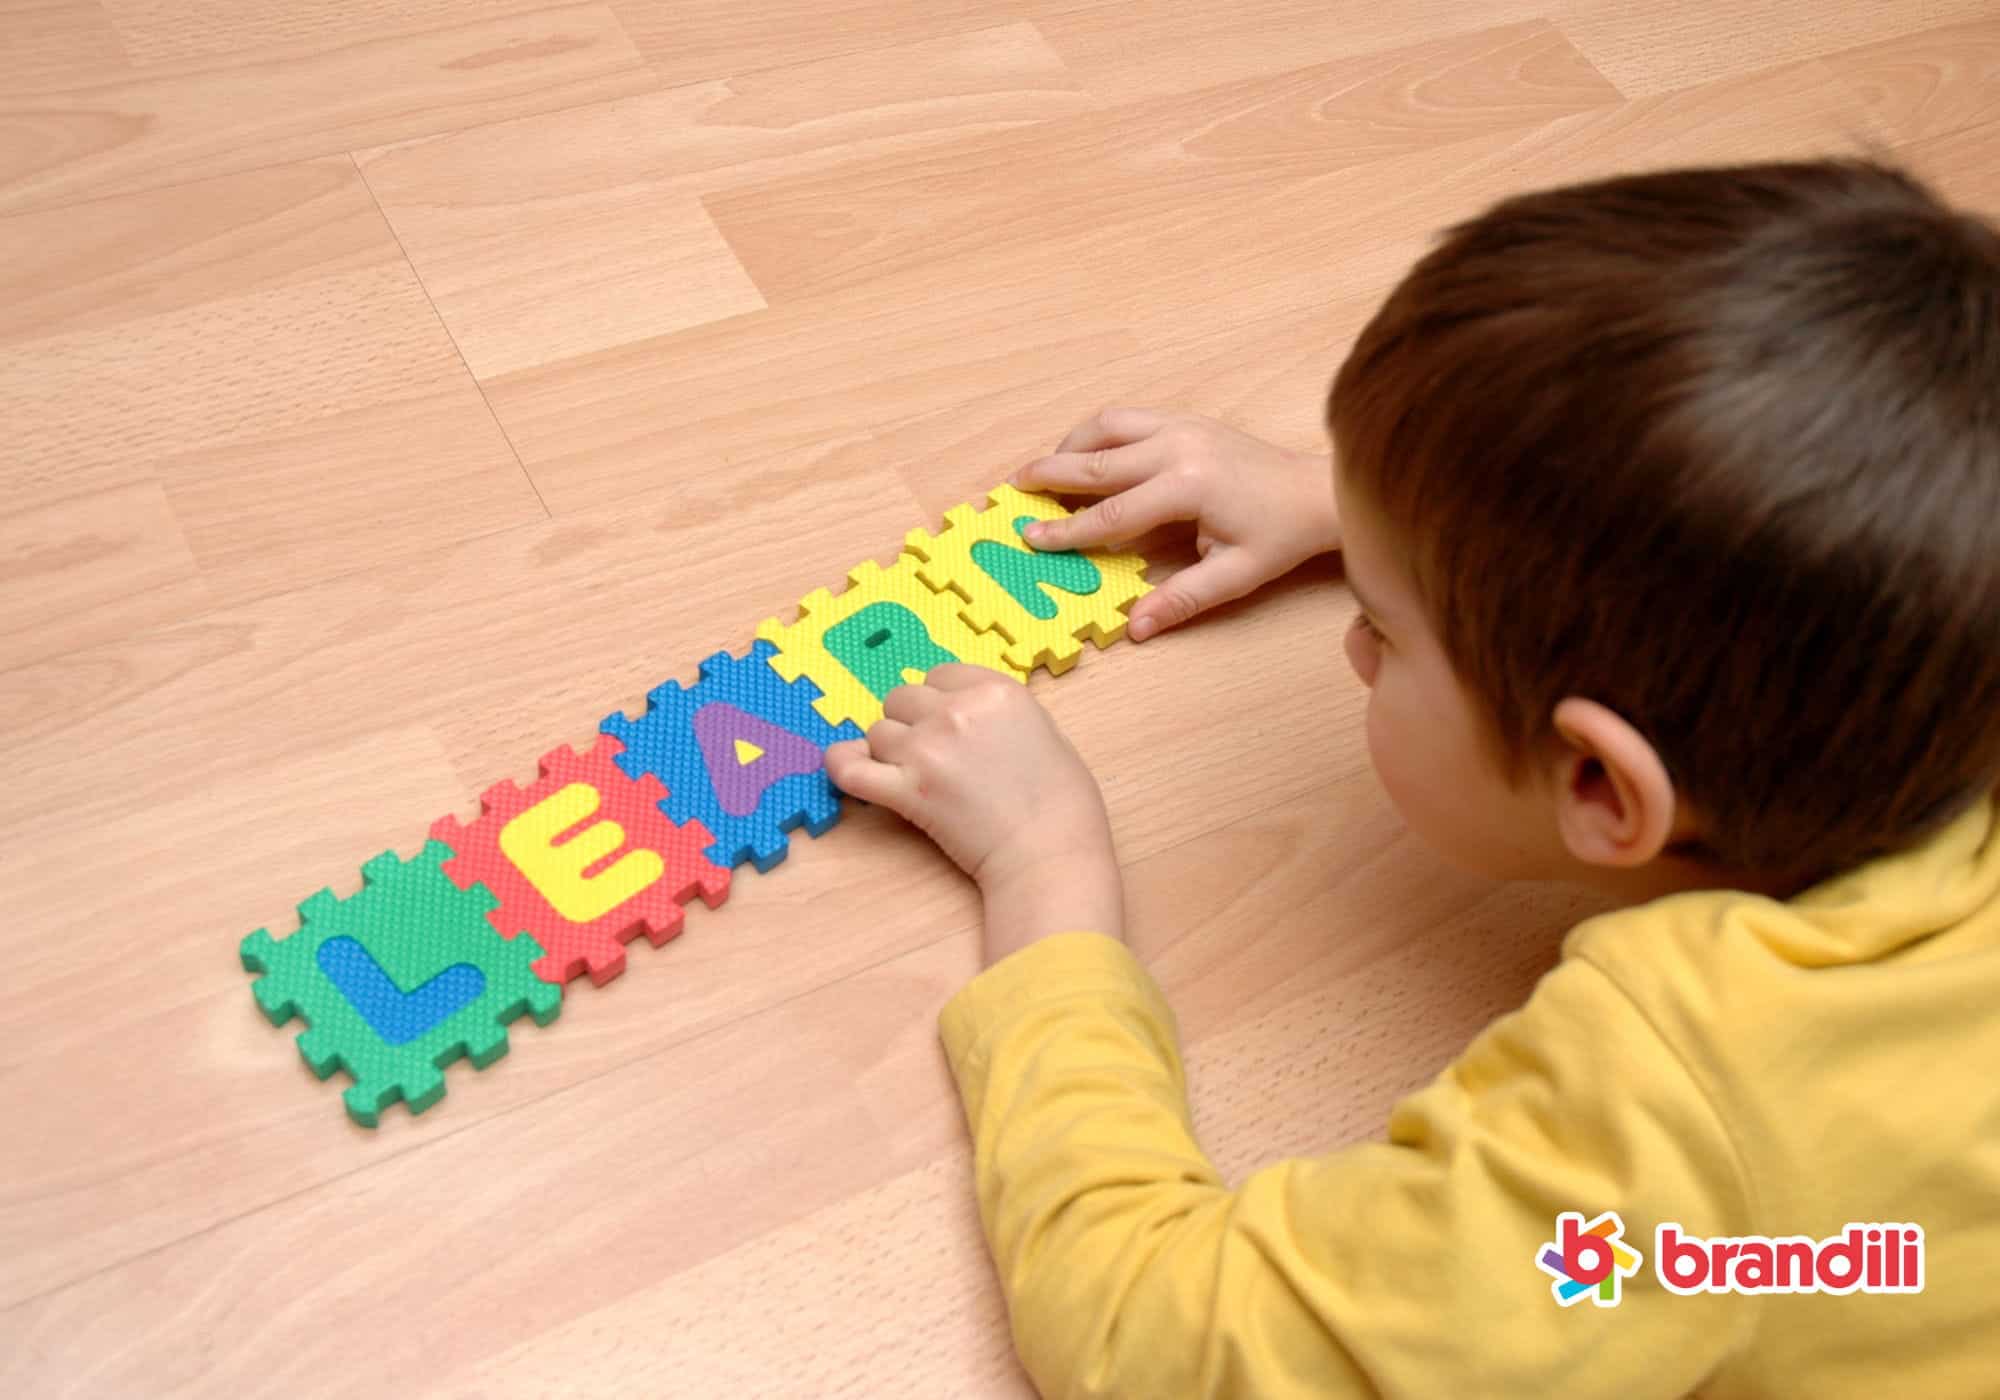 criança brincando com blocos que formam a palavra "LEARN"